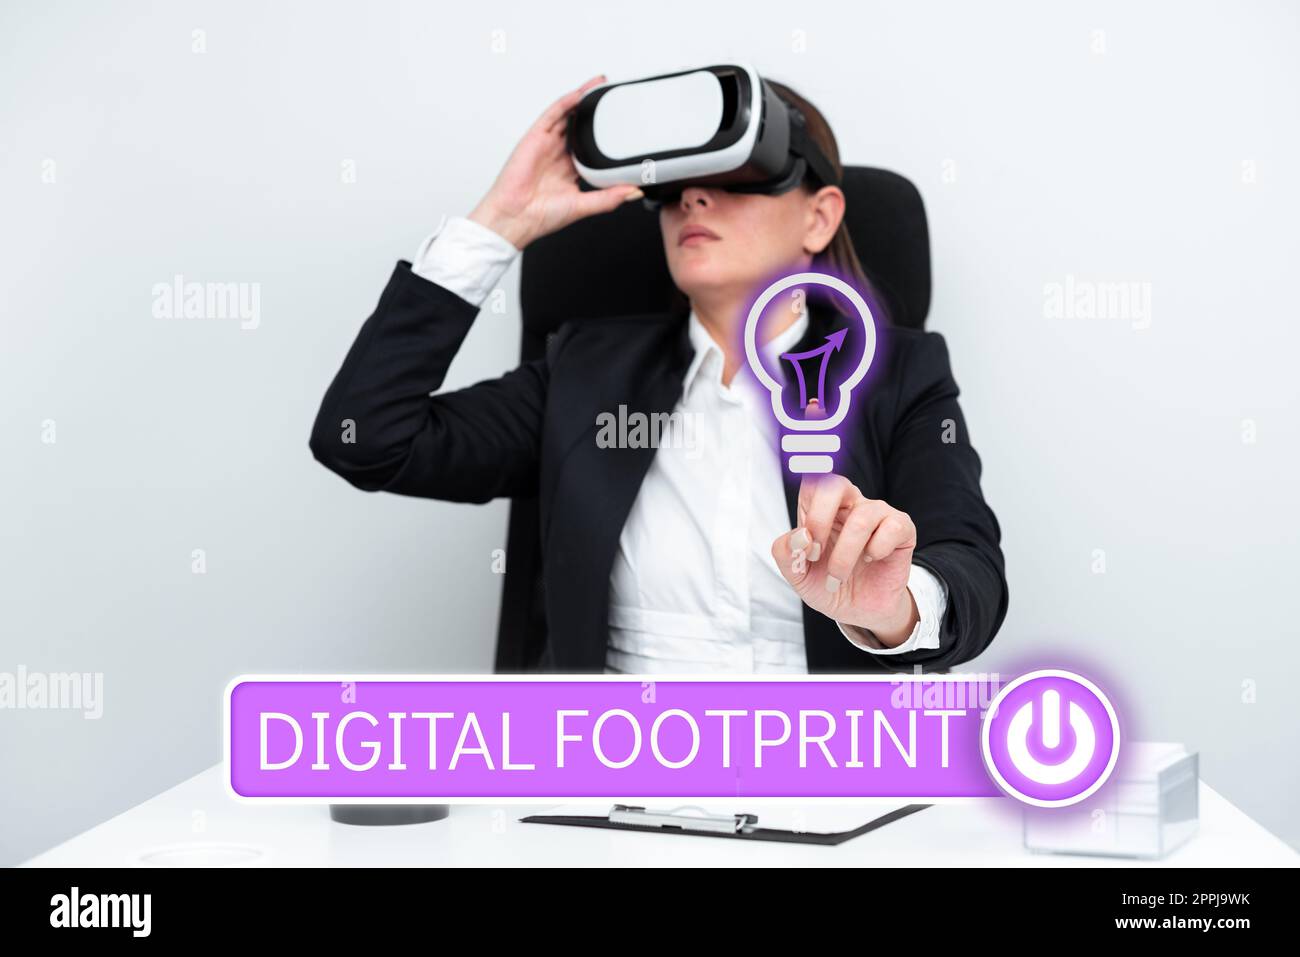 Handschriftliches Schild Digital Footprint. Internet Concept nutzt digitale Technologie für den Fertigungsprozess Stockfoto